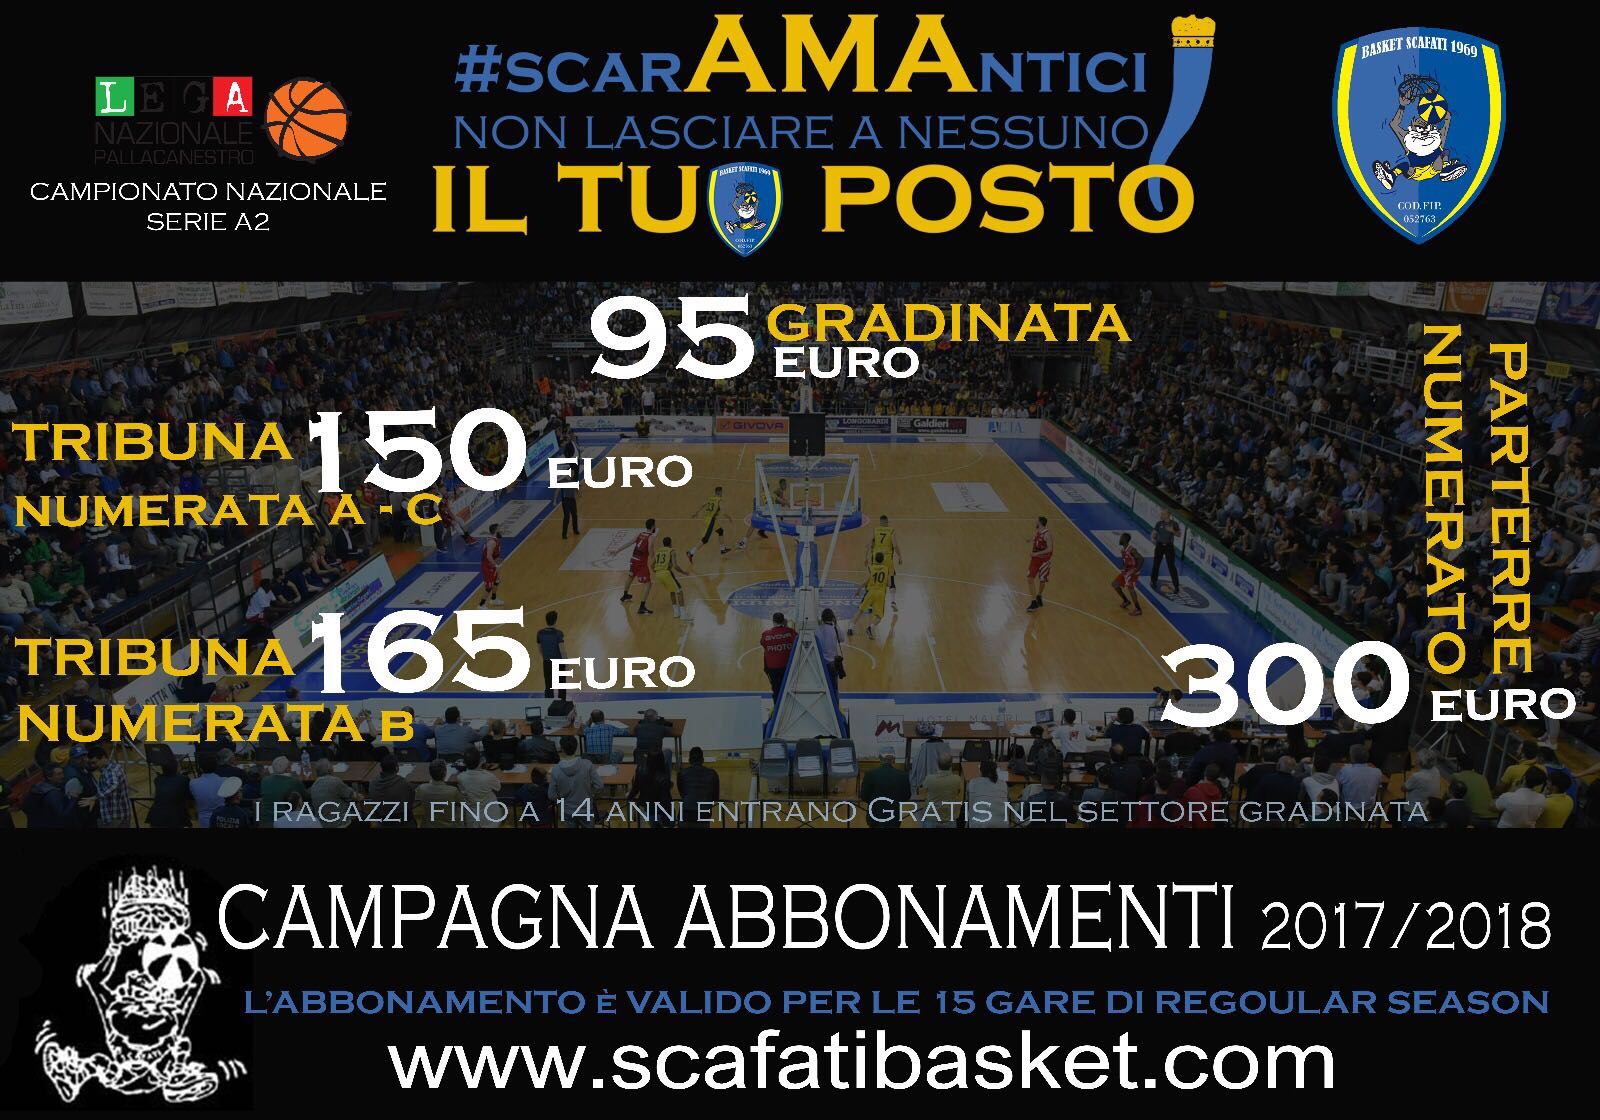 Campagna abbonamenti Givova Scafati Basket, “#SCARAMANTICI ama il tuo posto”